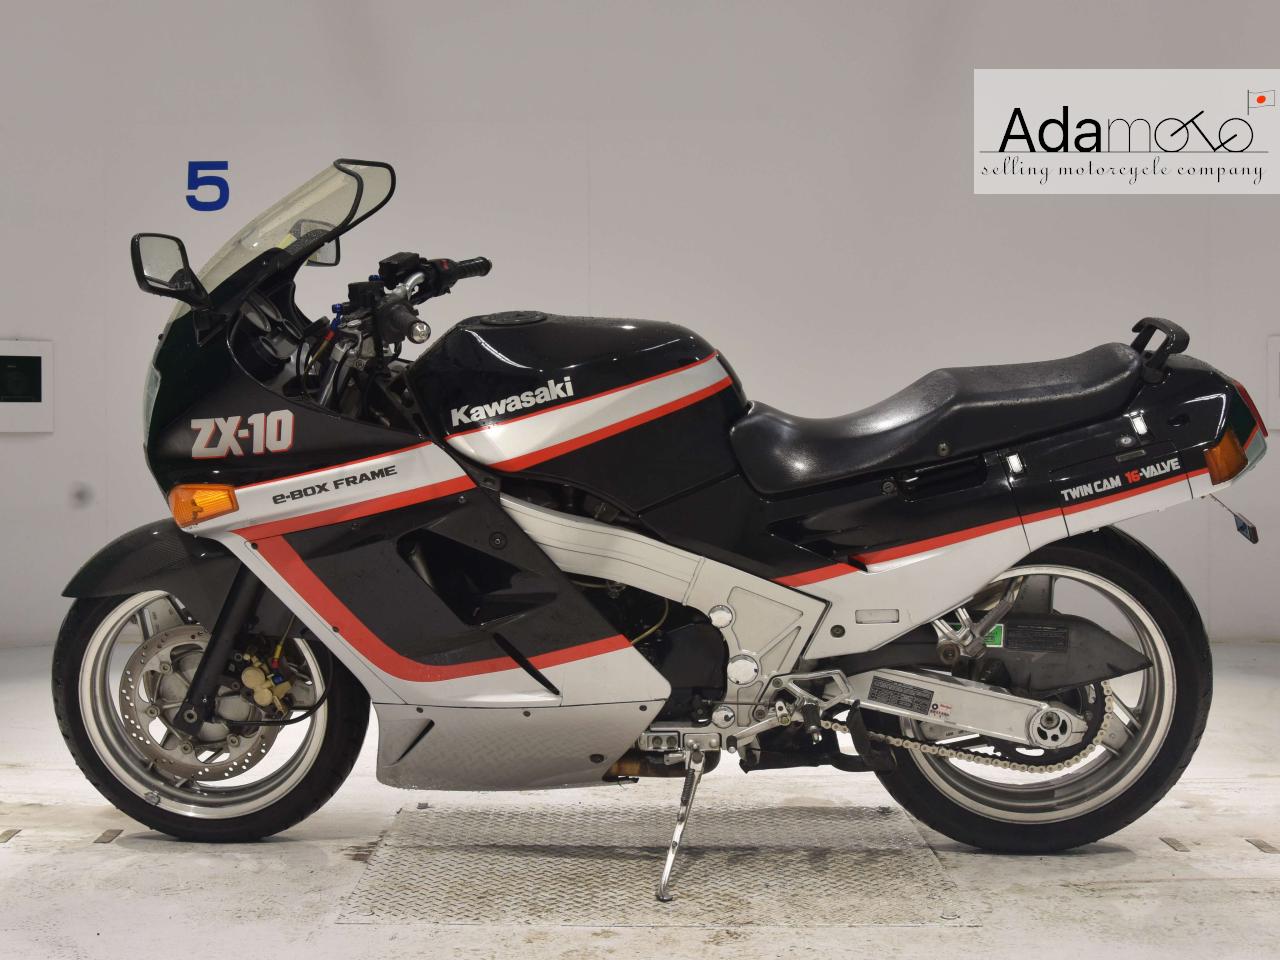 Kawasaki ZX-10 - Adamoto - Motorcycles from Japan